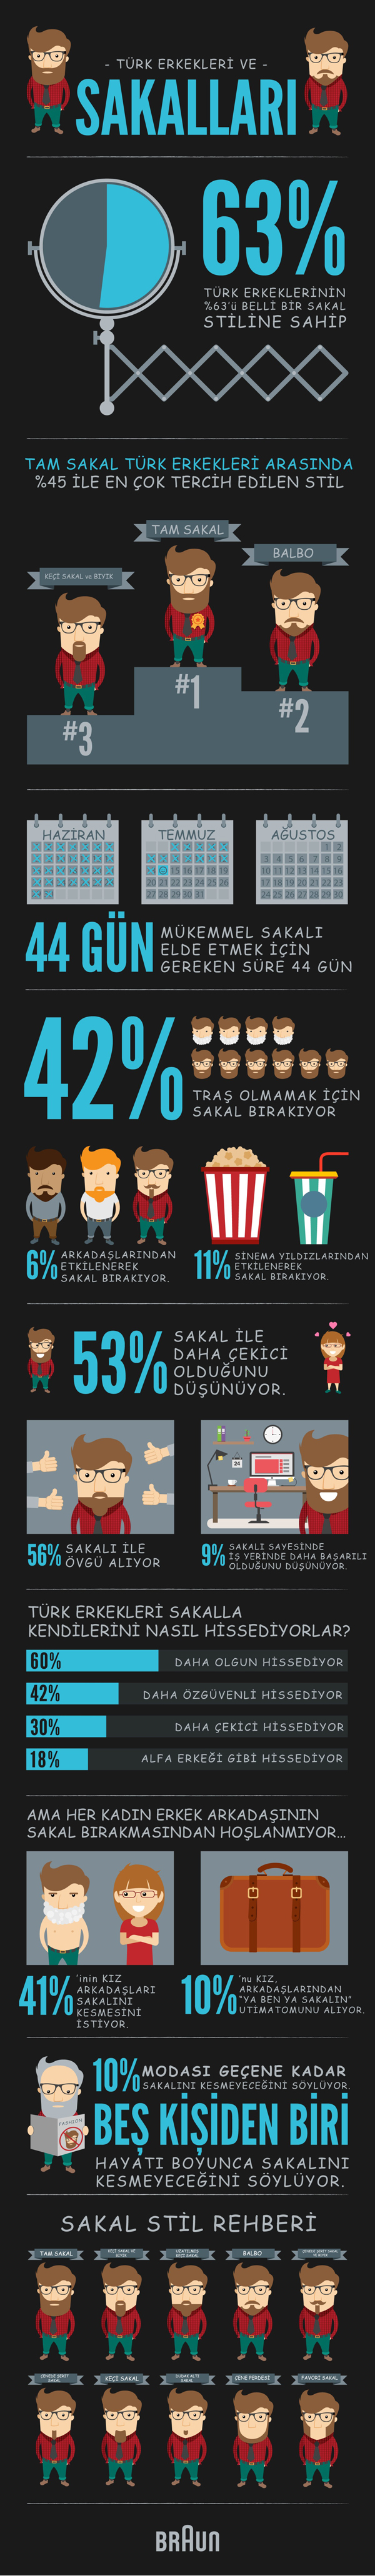 Braun_TurkErkegiSakallari_Infografik2015